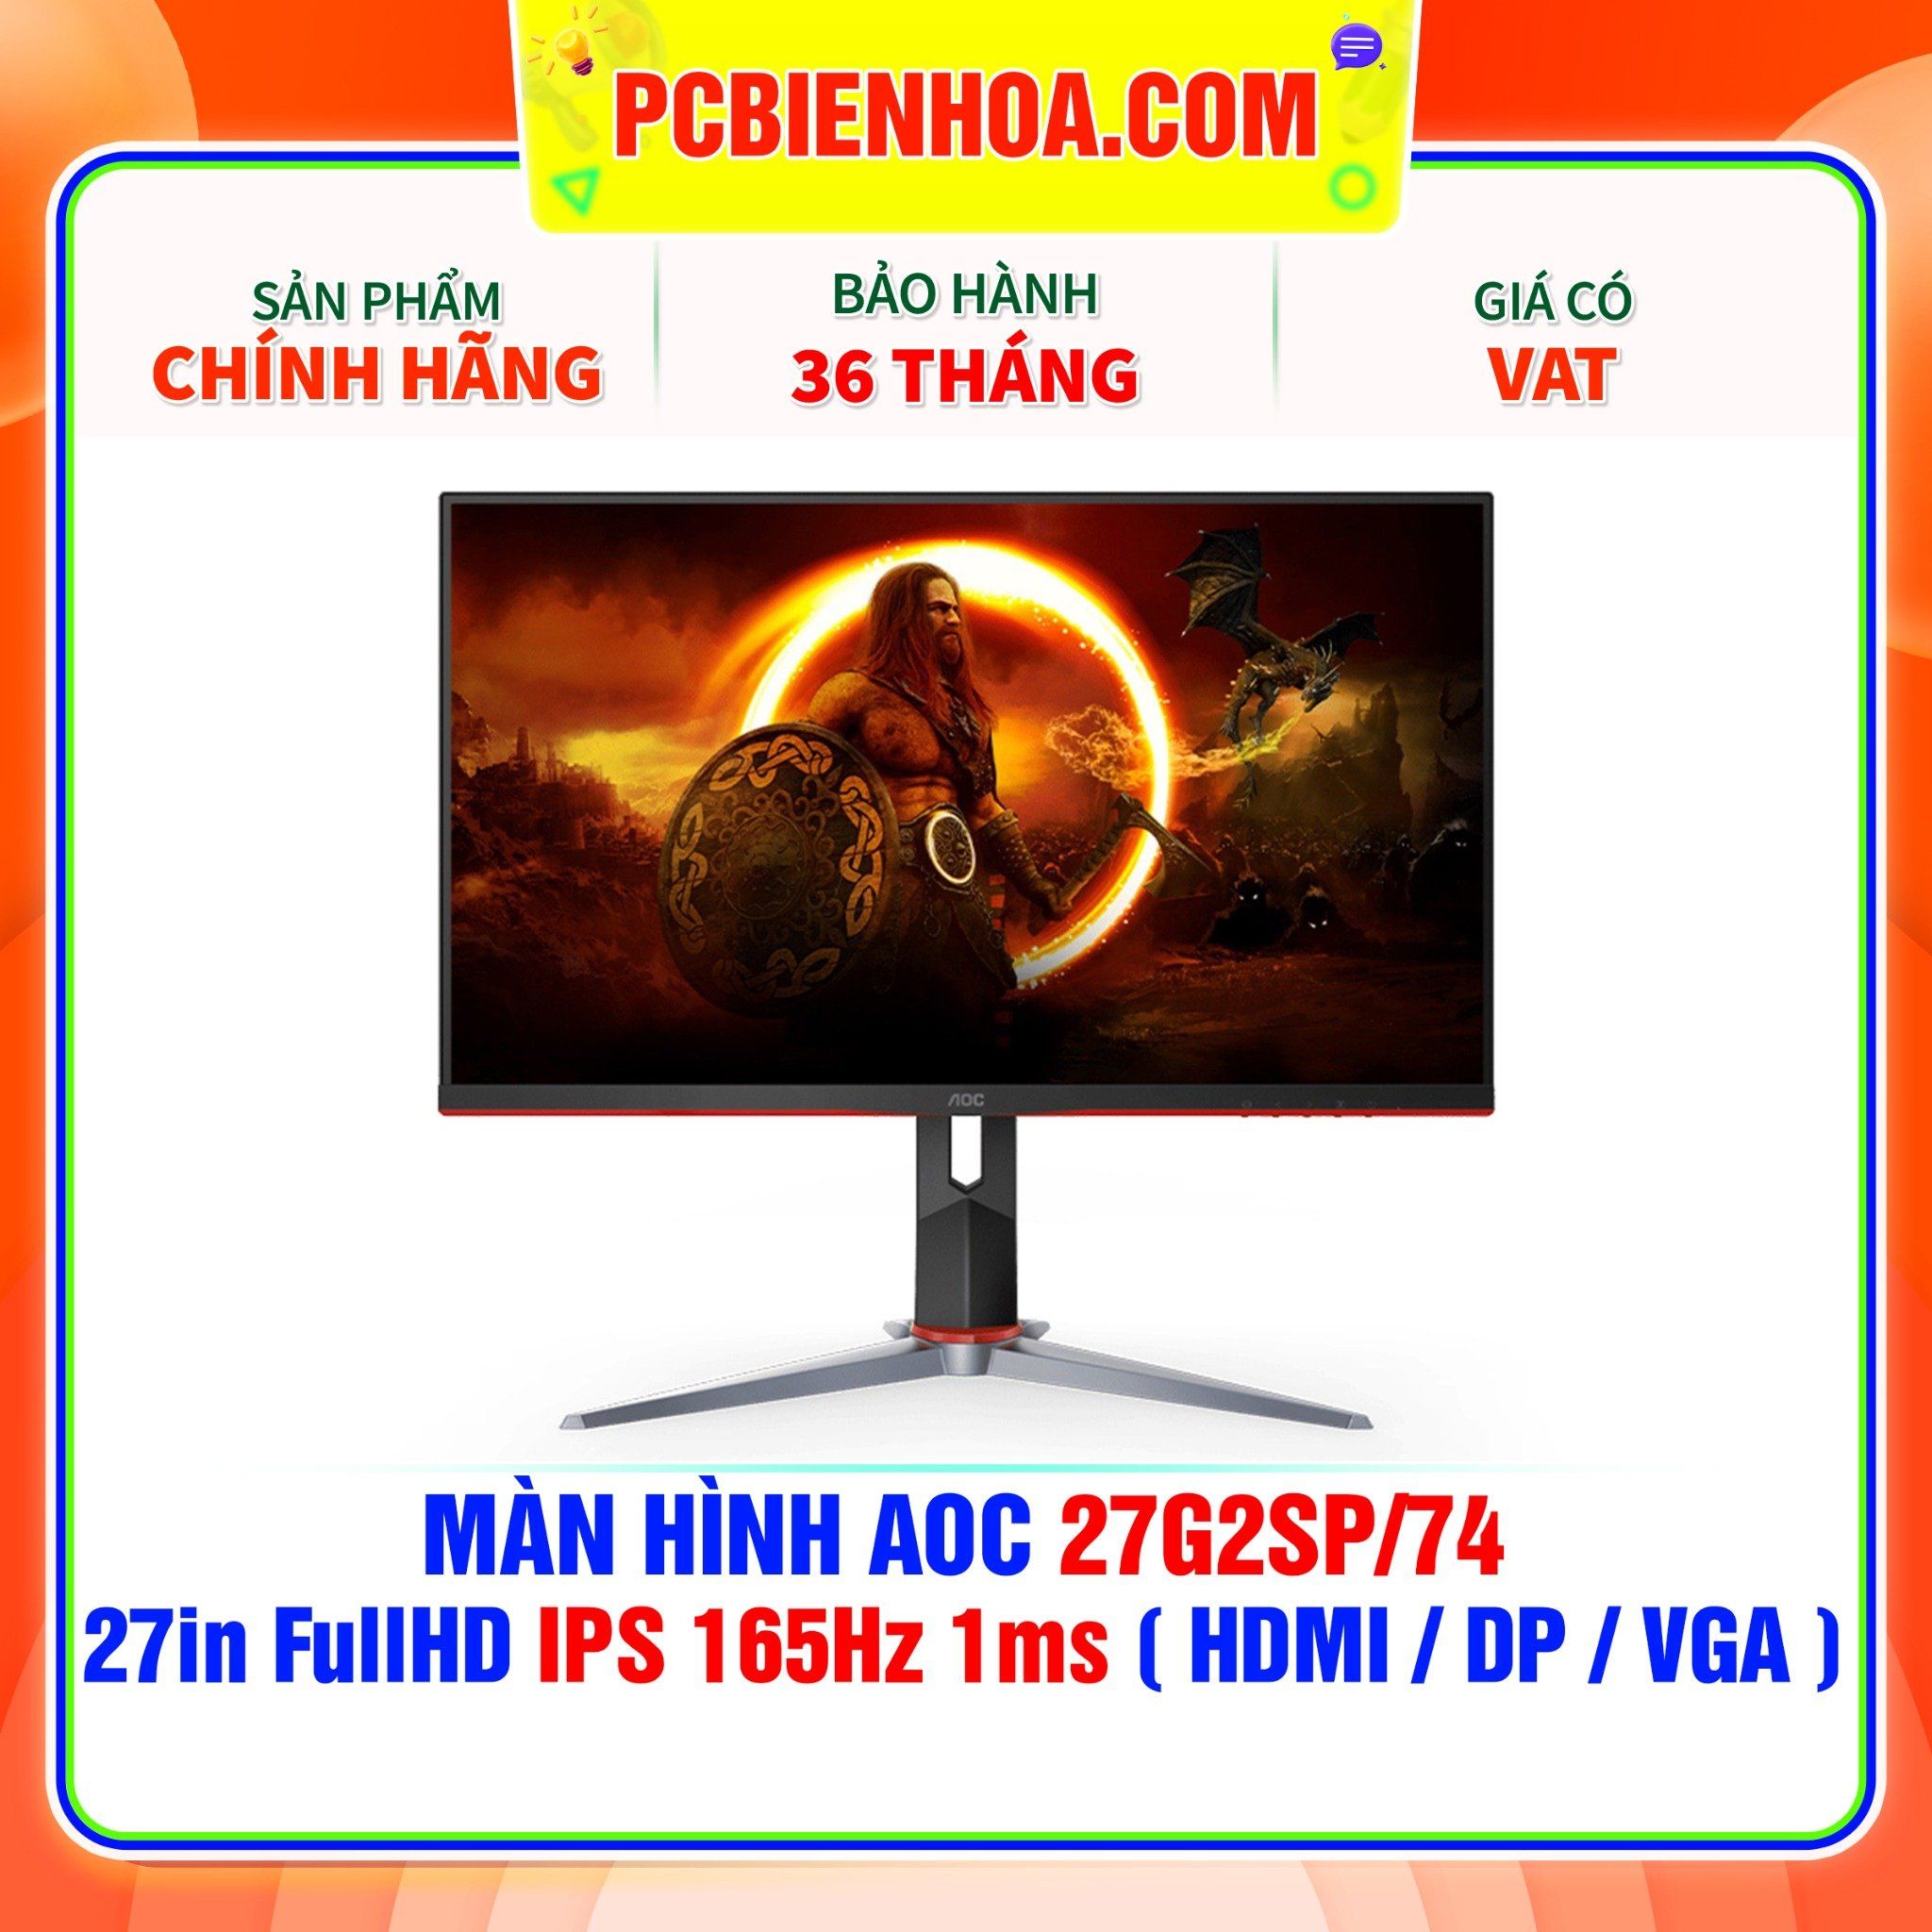  MÀN HÌNH AOC 27G2SP/74 27in FullHD IPS 165Hz 1ms ( HDMI / DP / VGA ) 